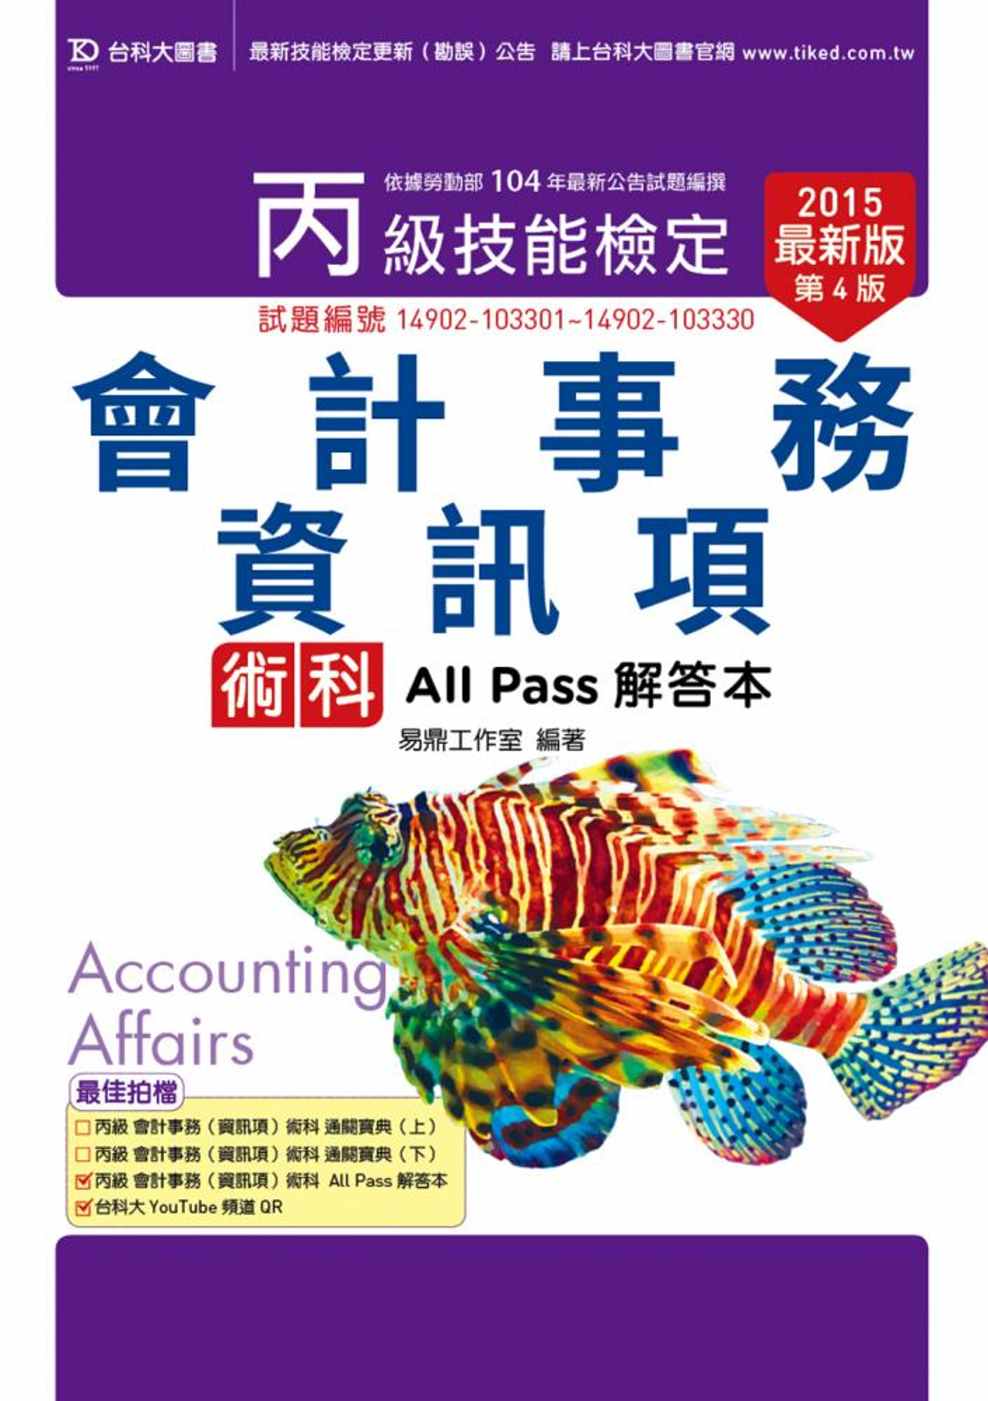 丙級會計事務(資訊項)術科All Pass解答本 - 2015年最新版(第四版)